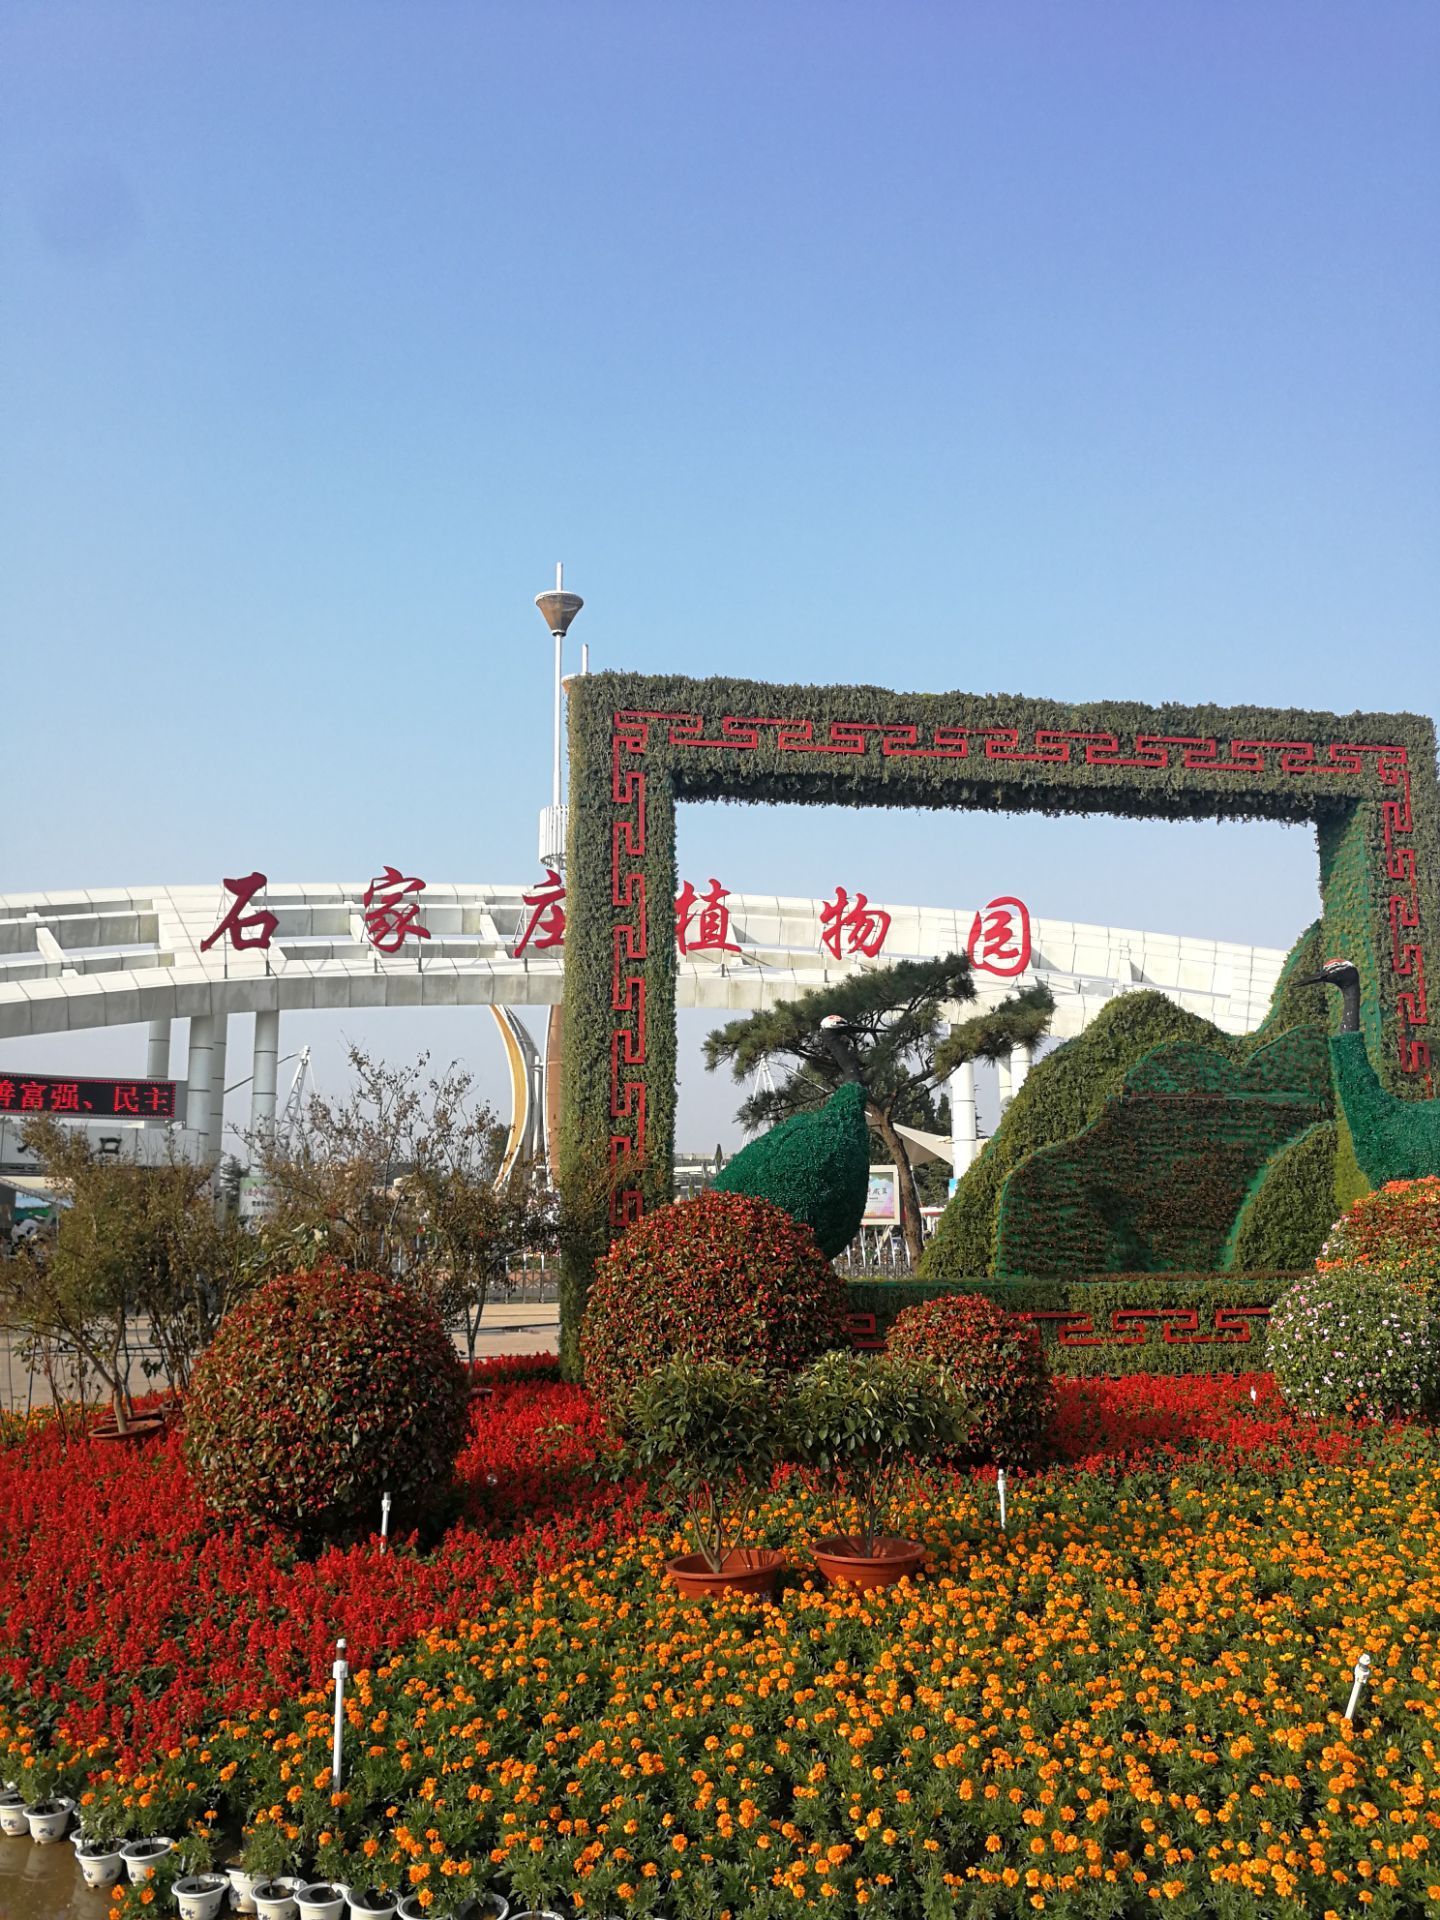 上海植物园攻略,上海植物园门票/游玩攻略/地址/图片/门票价格【携程攻略】